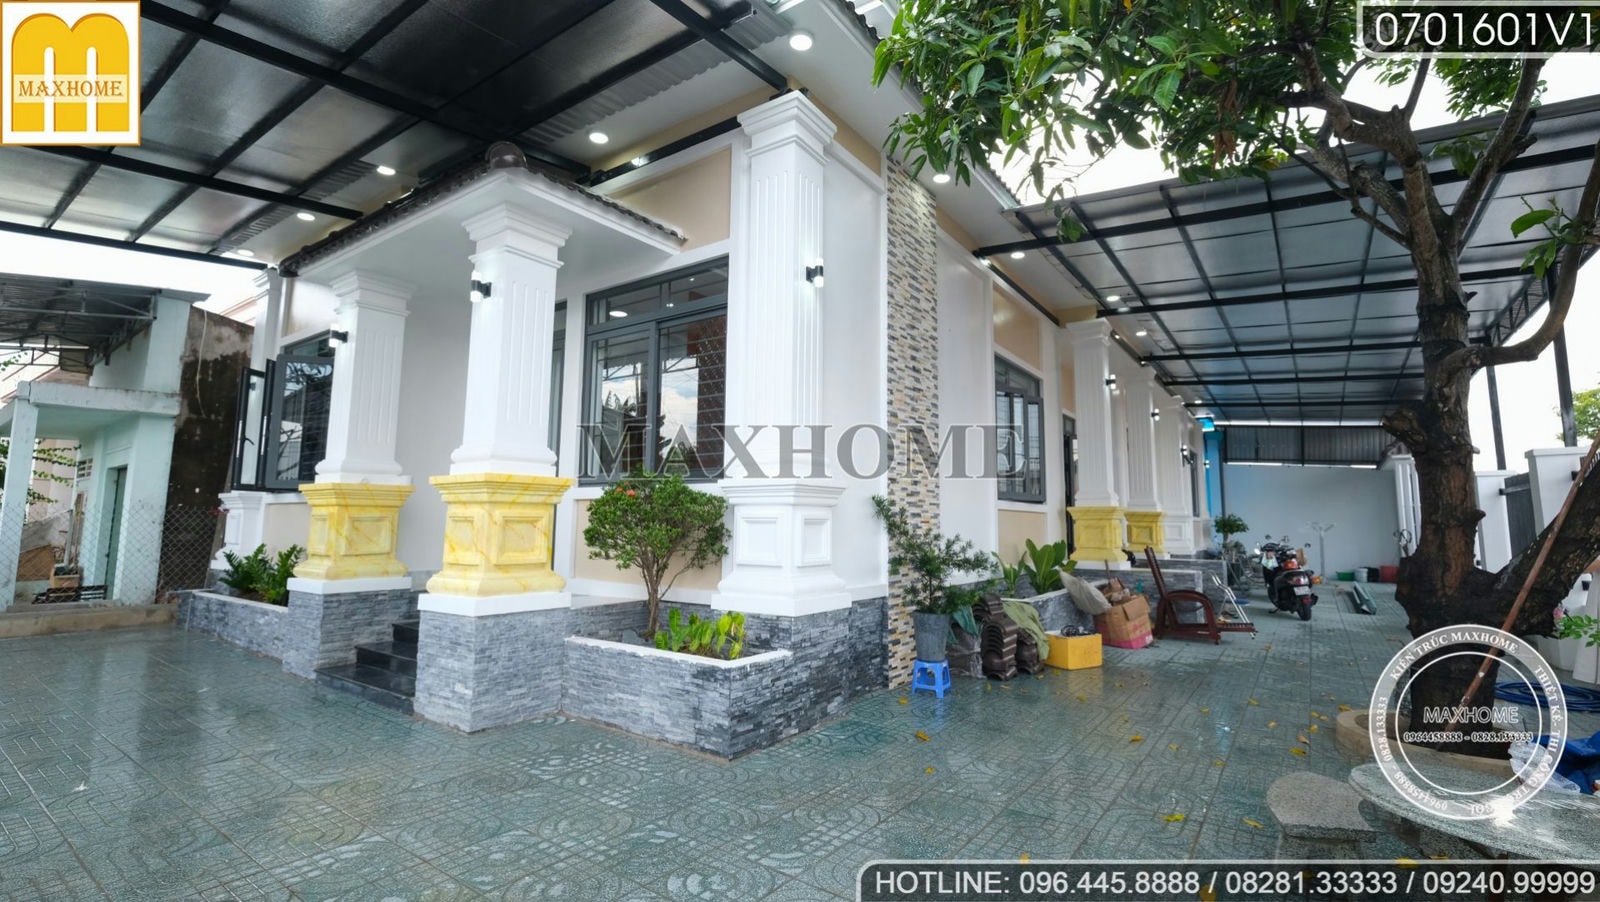 Tham quan ngôi nhà vườn với thiết kế 5 phòng ngủ ở Tây Ninh | MH01546